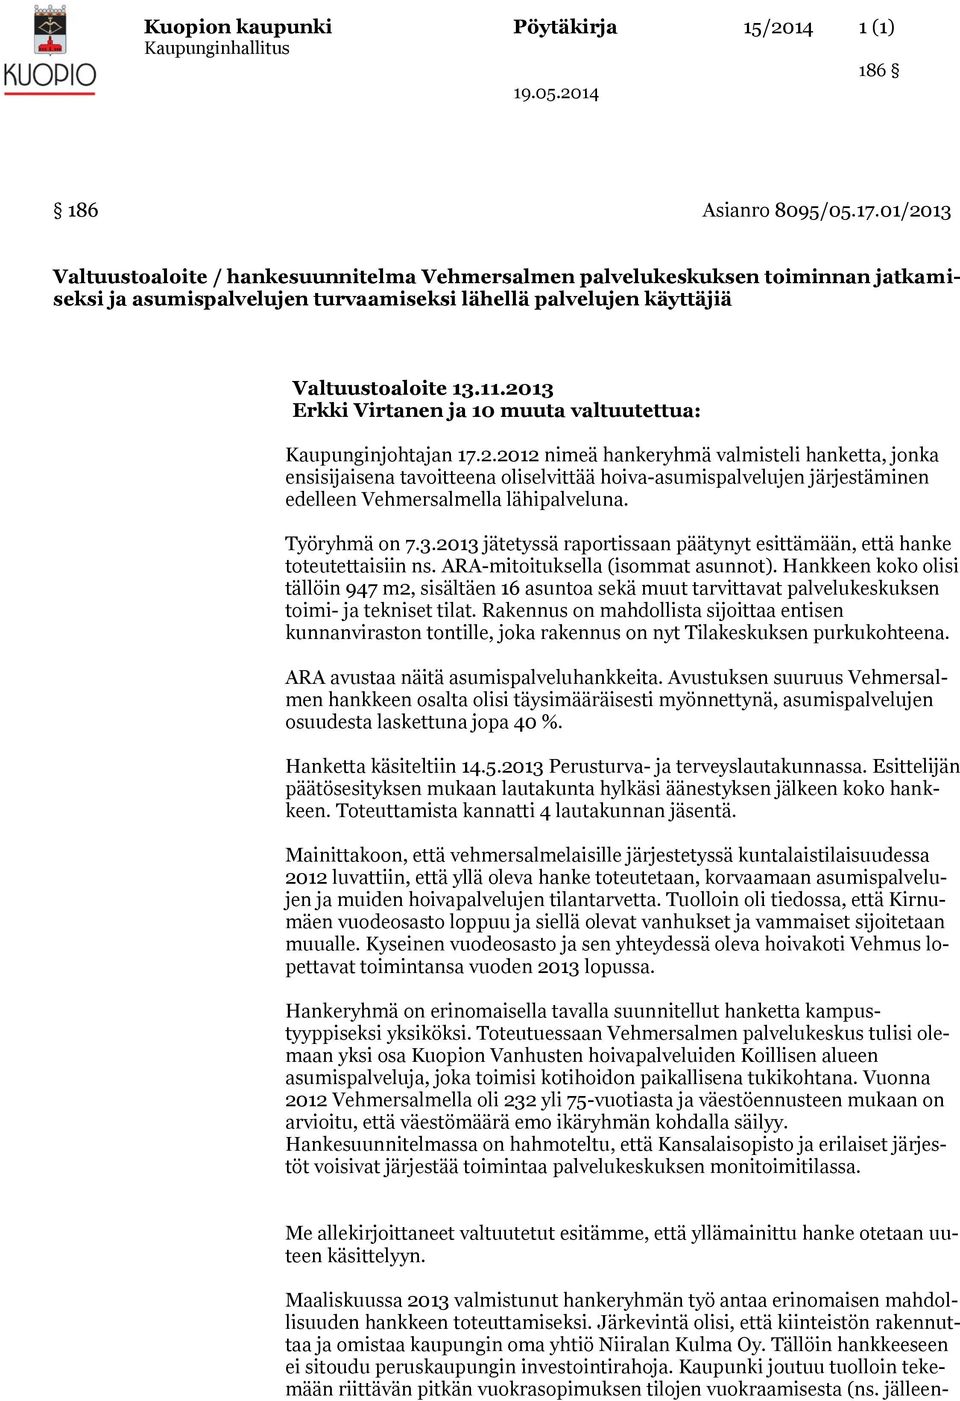 2013 Erkki Virtanen ja 10 muuta valtuutettua: Kaupunginjohtajan 17.2.2012 nimeä hankeryhmä valmisteli hanketta, jonka ensisijaisena tavoitteena oliselvittää hoiva-asumispalvelujen järjestäminen edelleen Vehmersalmella lähipalveluna.